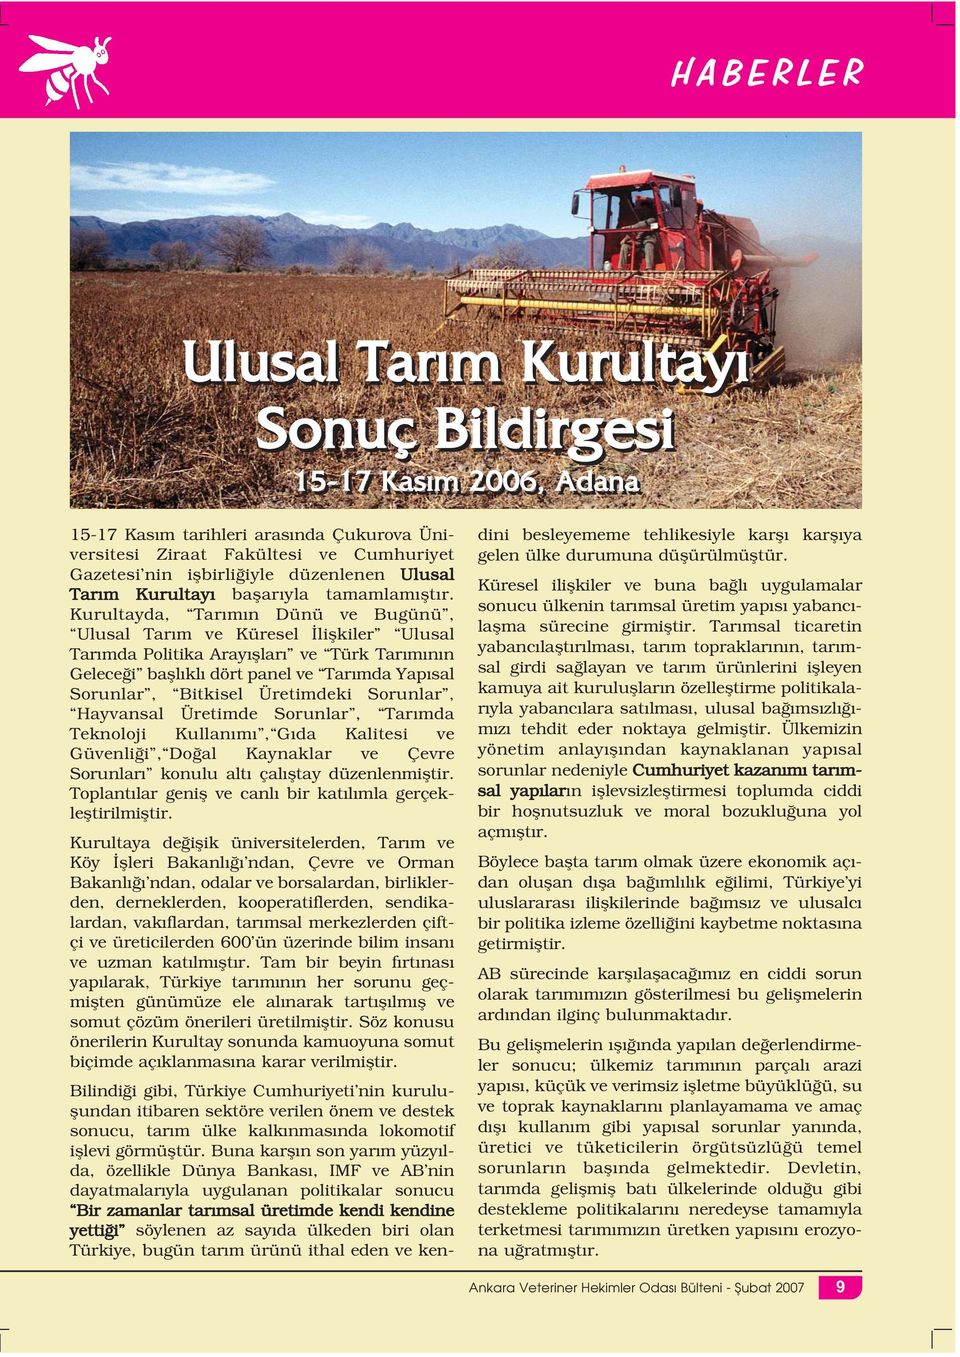 Kurultayda, Tarımın Dünü ve Bugünü, Ulusal Tarım ve Küresel İlişkiler Ulusal Tarımda Politika Arayışları ve Türk Tarımının Geleceği başlıklı dört panel ve Tarımda Yapısal Sorunlar, Bitkisel